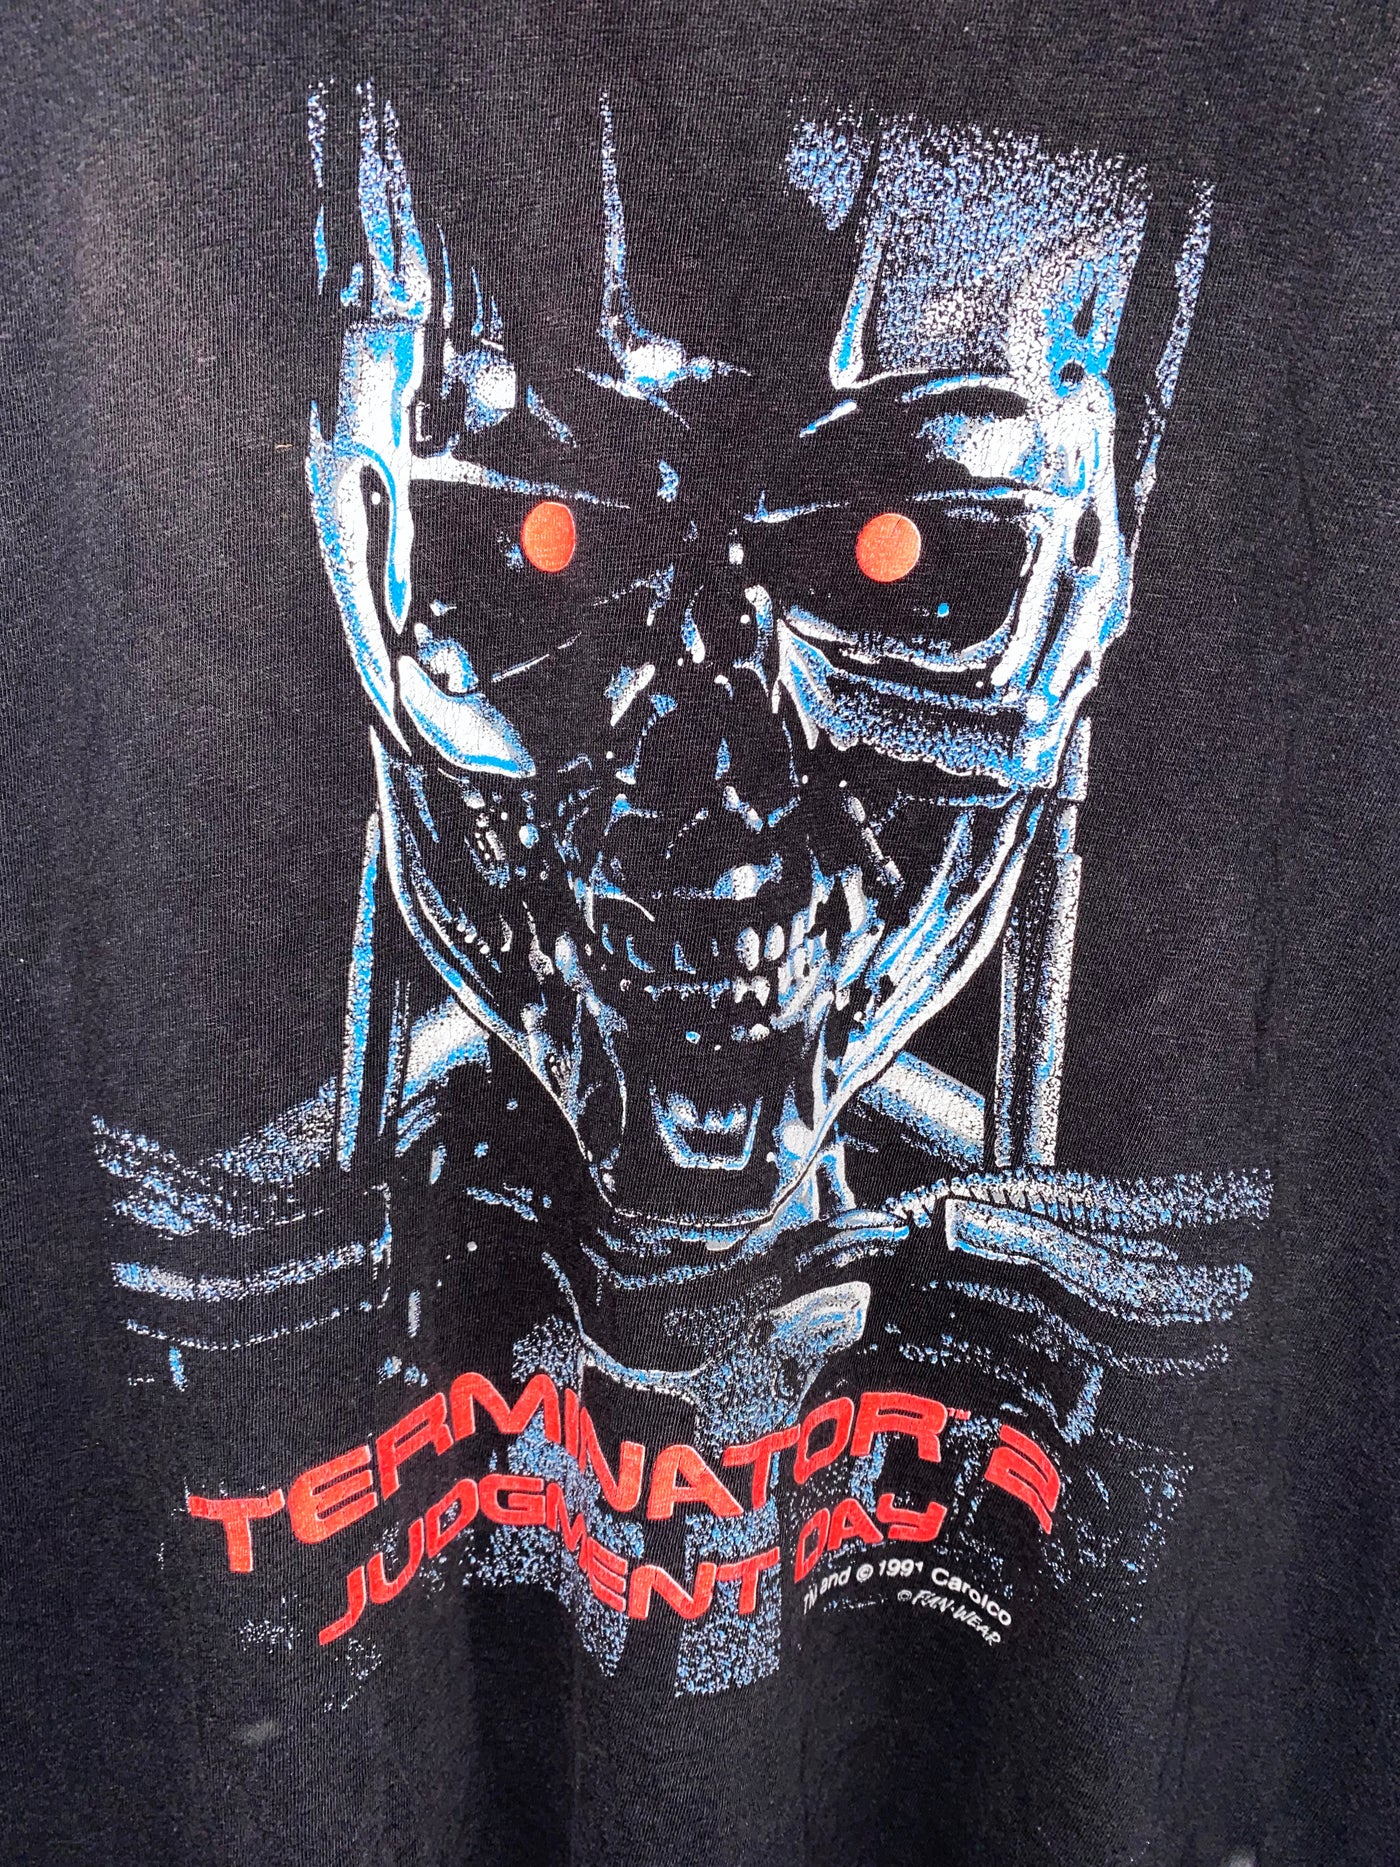 Vintage 1991 Terminator 2 Judgement Day T-Shirt